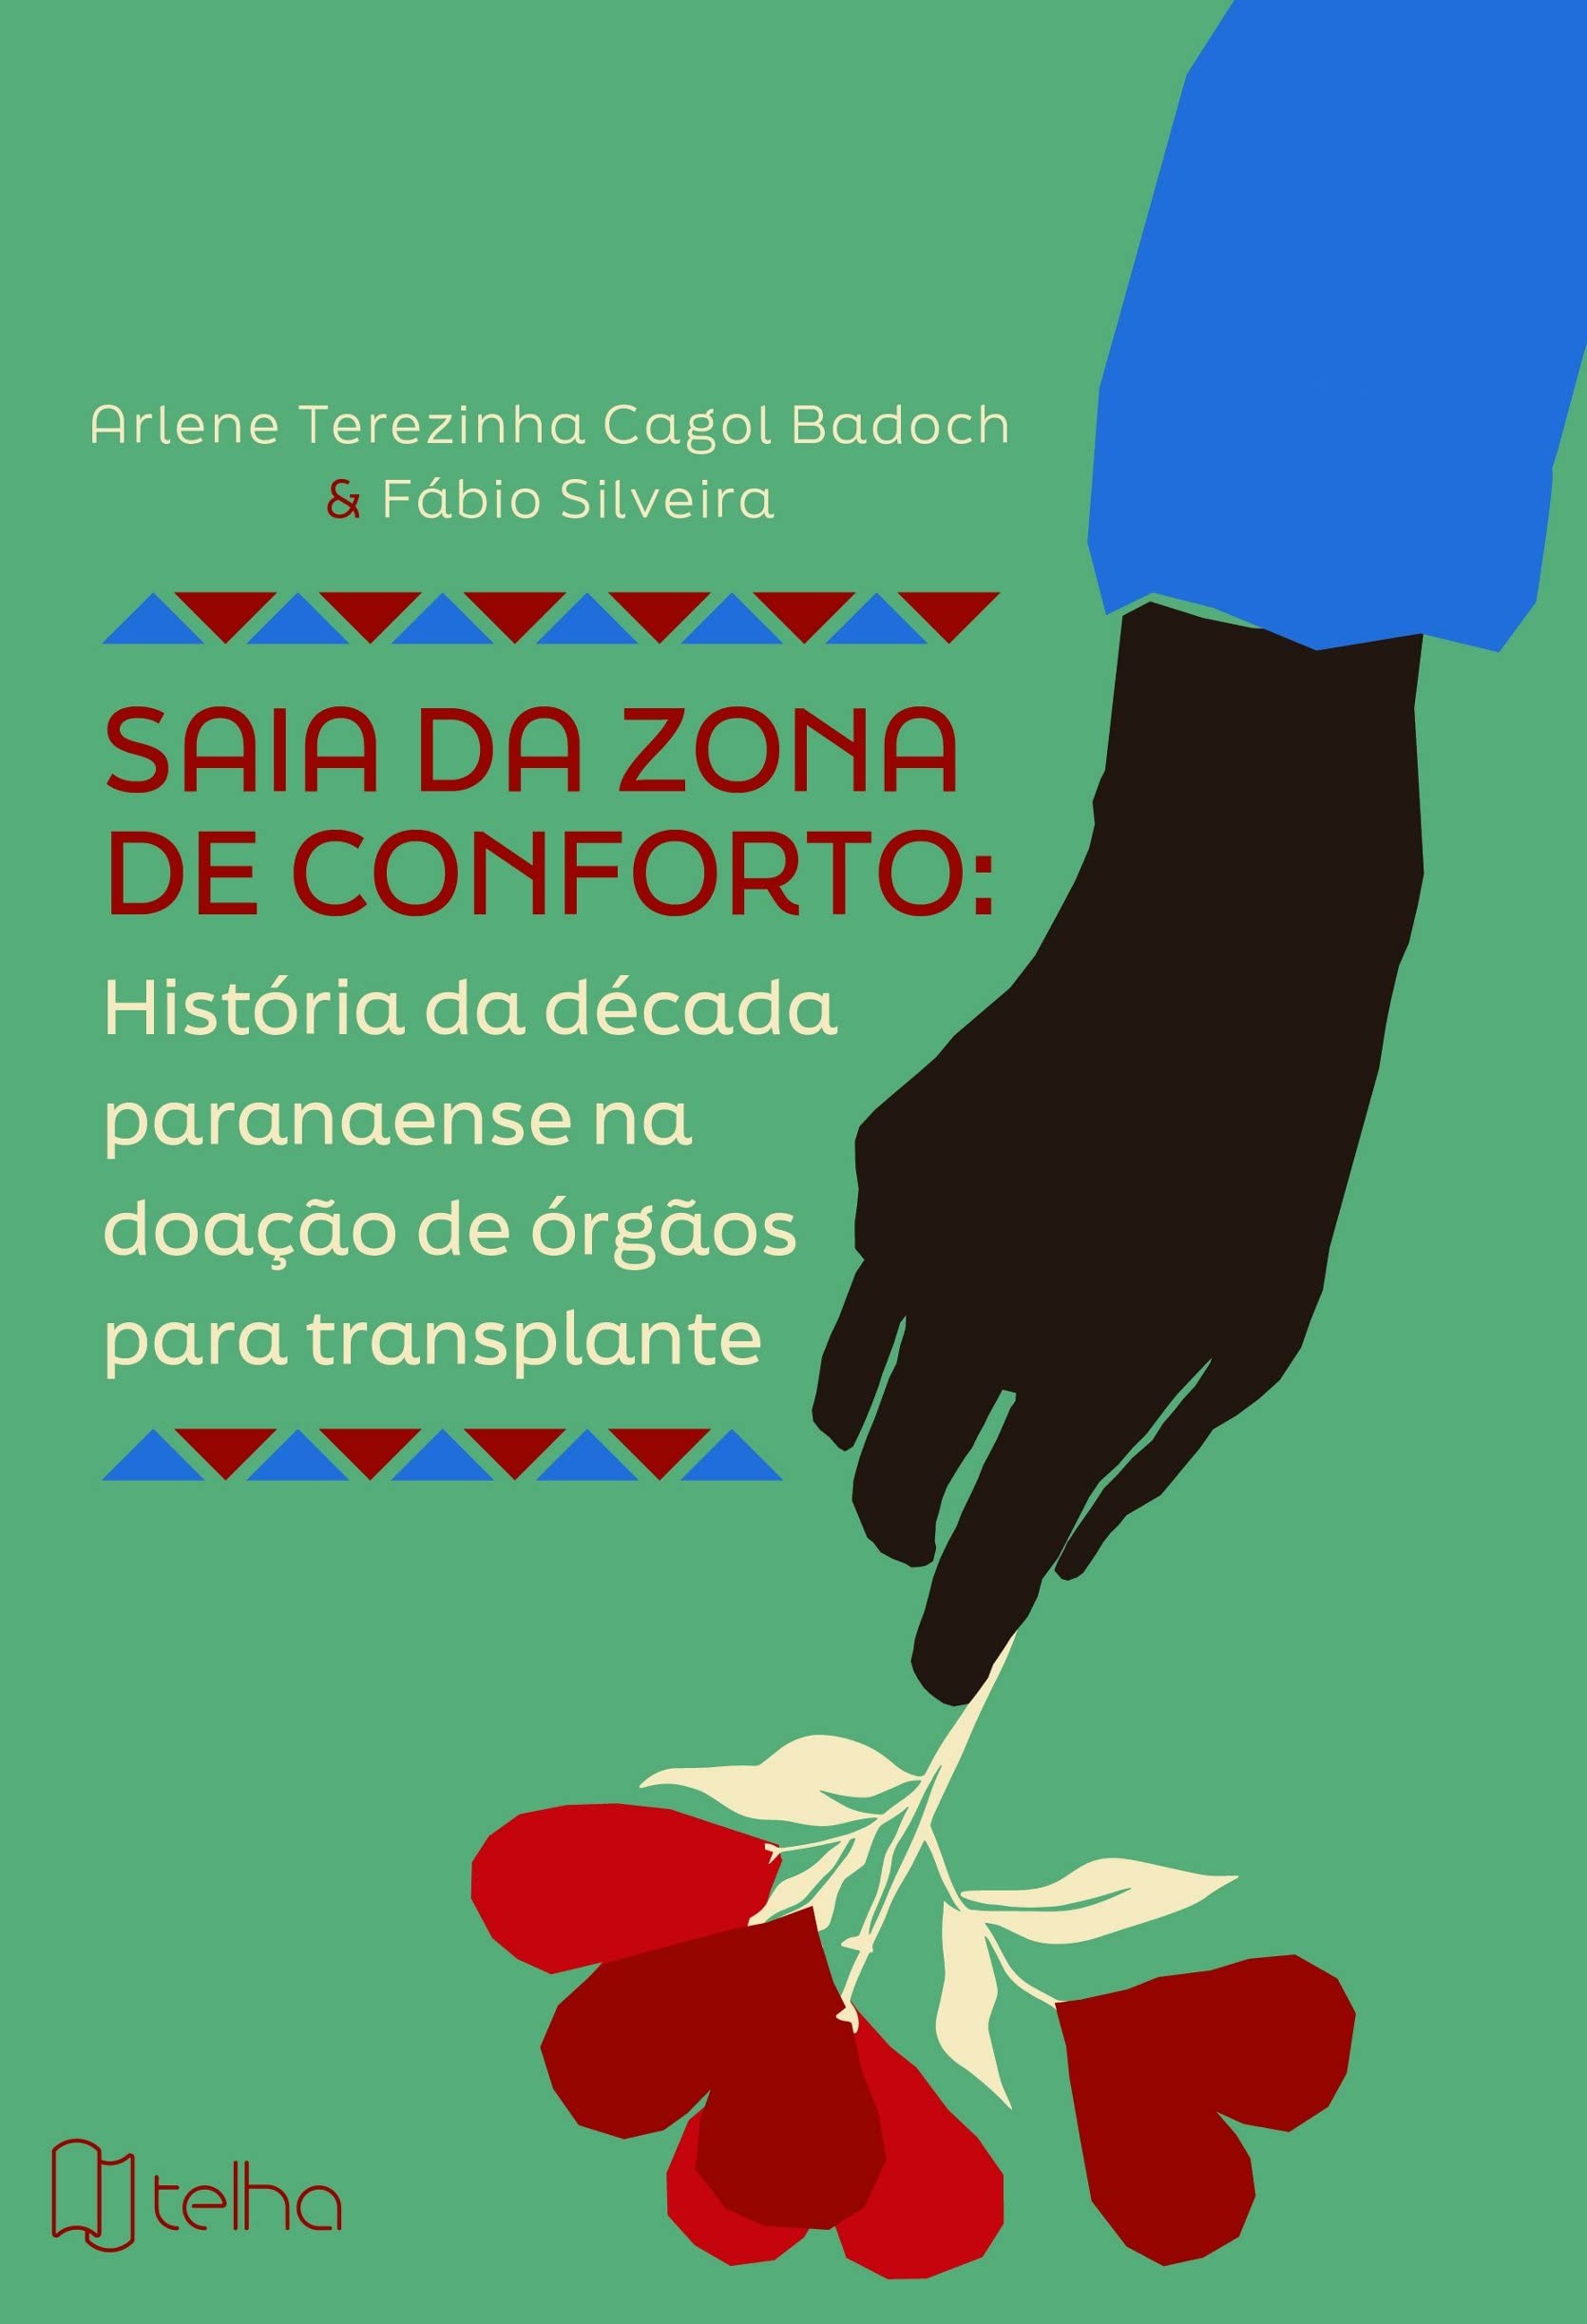 Médico do ICF lança livro onde relata uma década de transplantes no Paraná